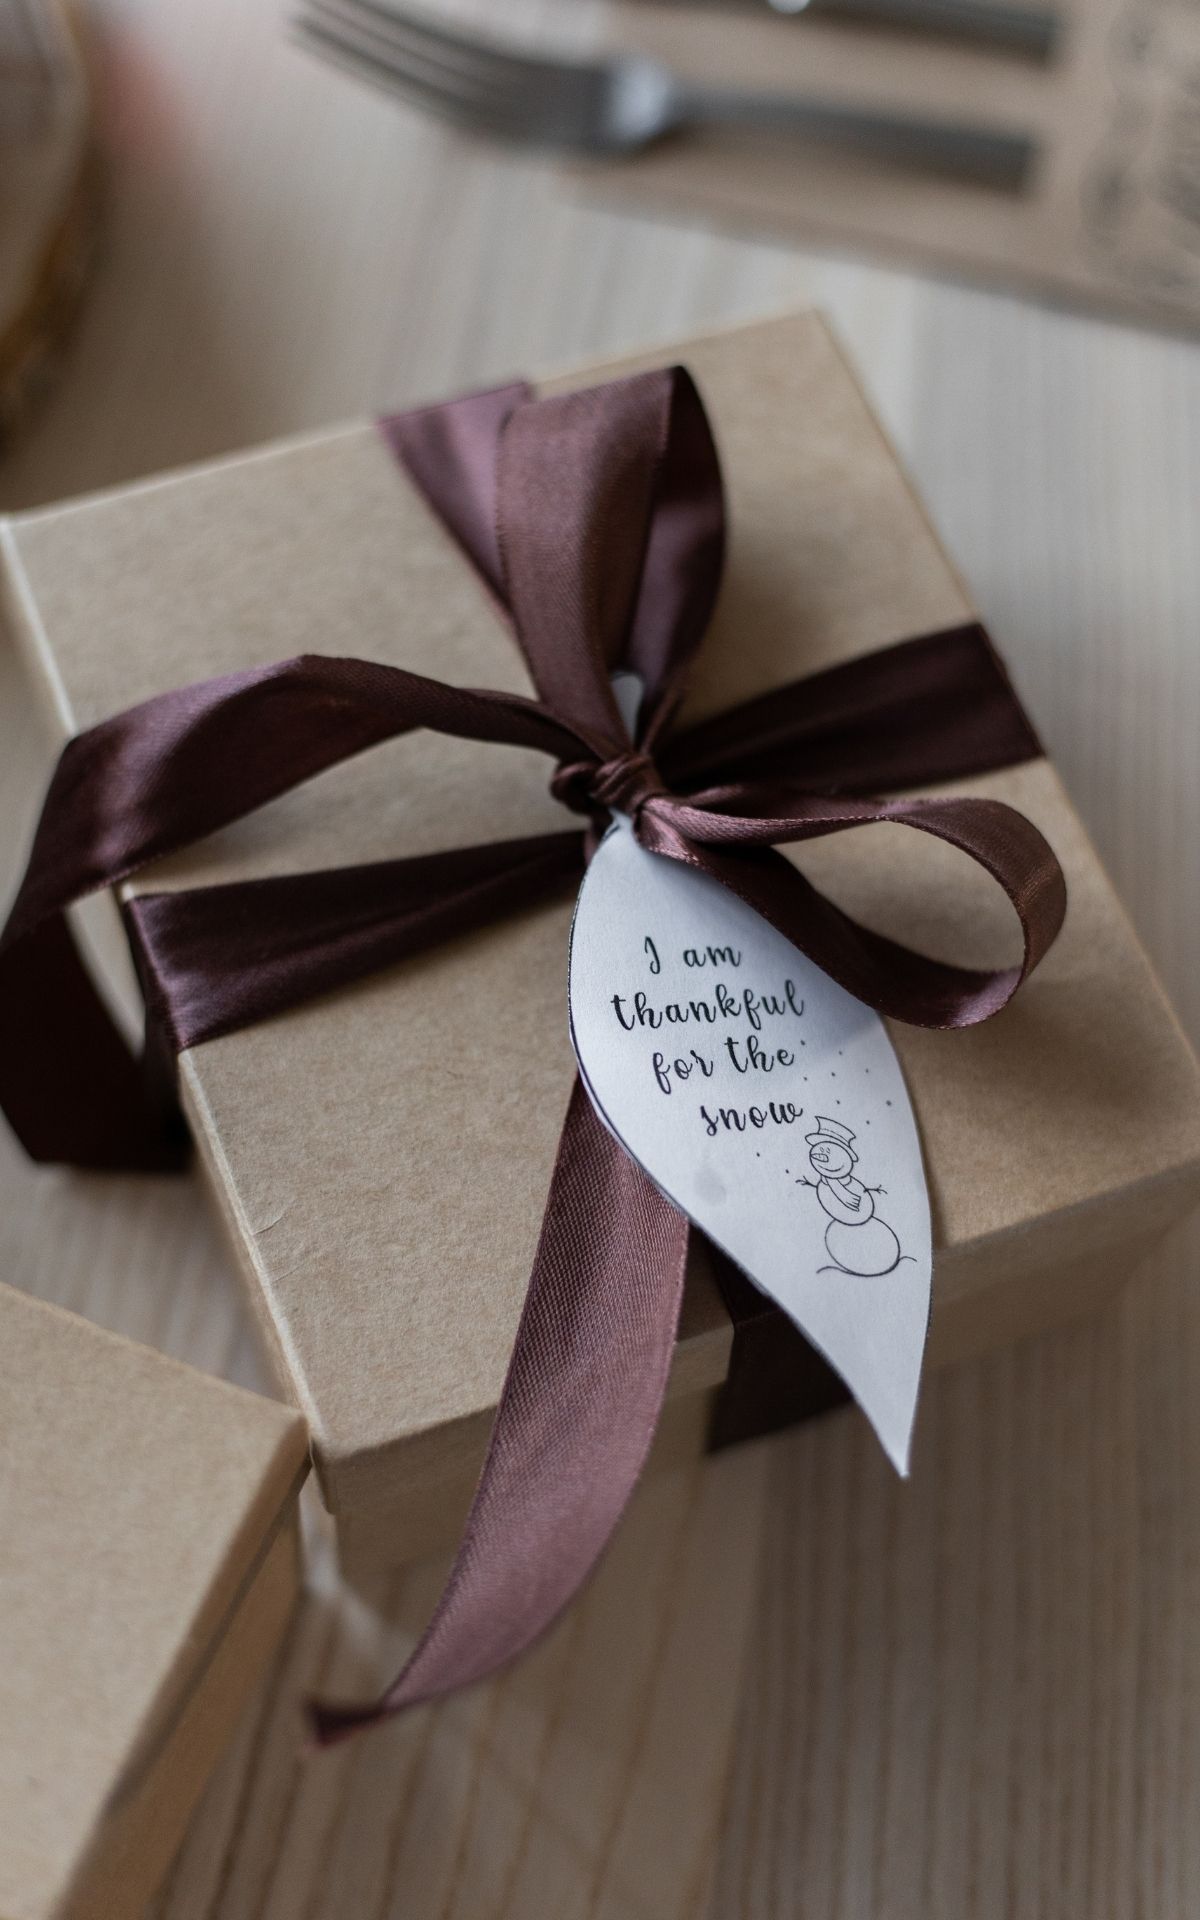 Geschenke nachhaltig verpacken? Mit diesen 5 Ideen für nachhaltige(re) Geschenkverpackung produzierst du garantiert weniger Müll - nicht nur zu Weihnachten.